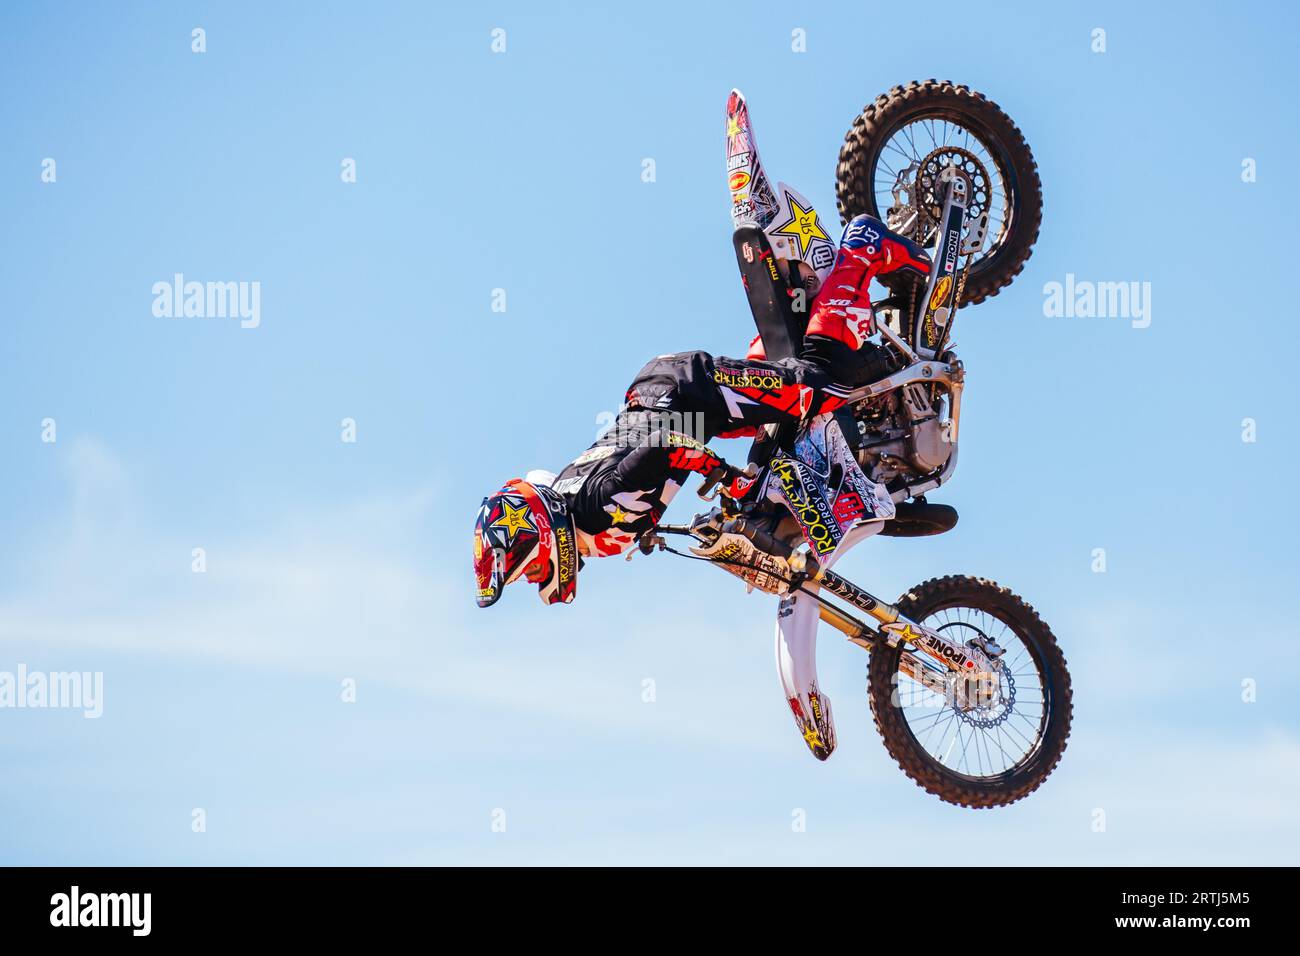 Melbourne, Australien, 20. März 2016: Ein Motocross-Fahrer macht Tricks in einer öffentlichen Ausstellung in Melbourne, Victoria, Australien Stockfoto